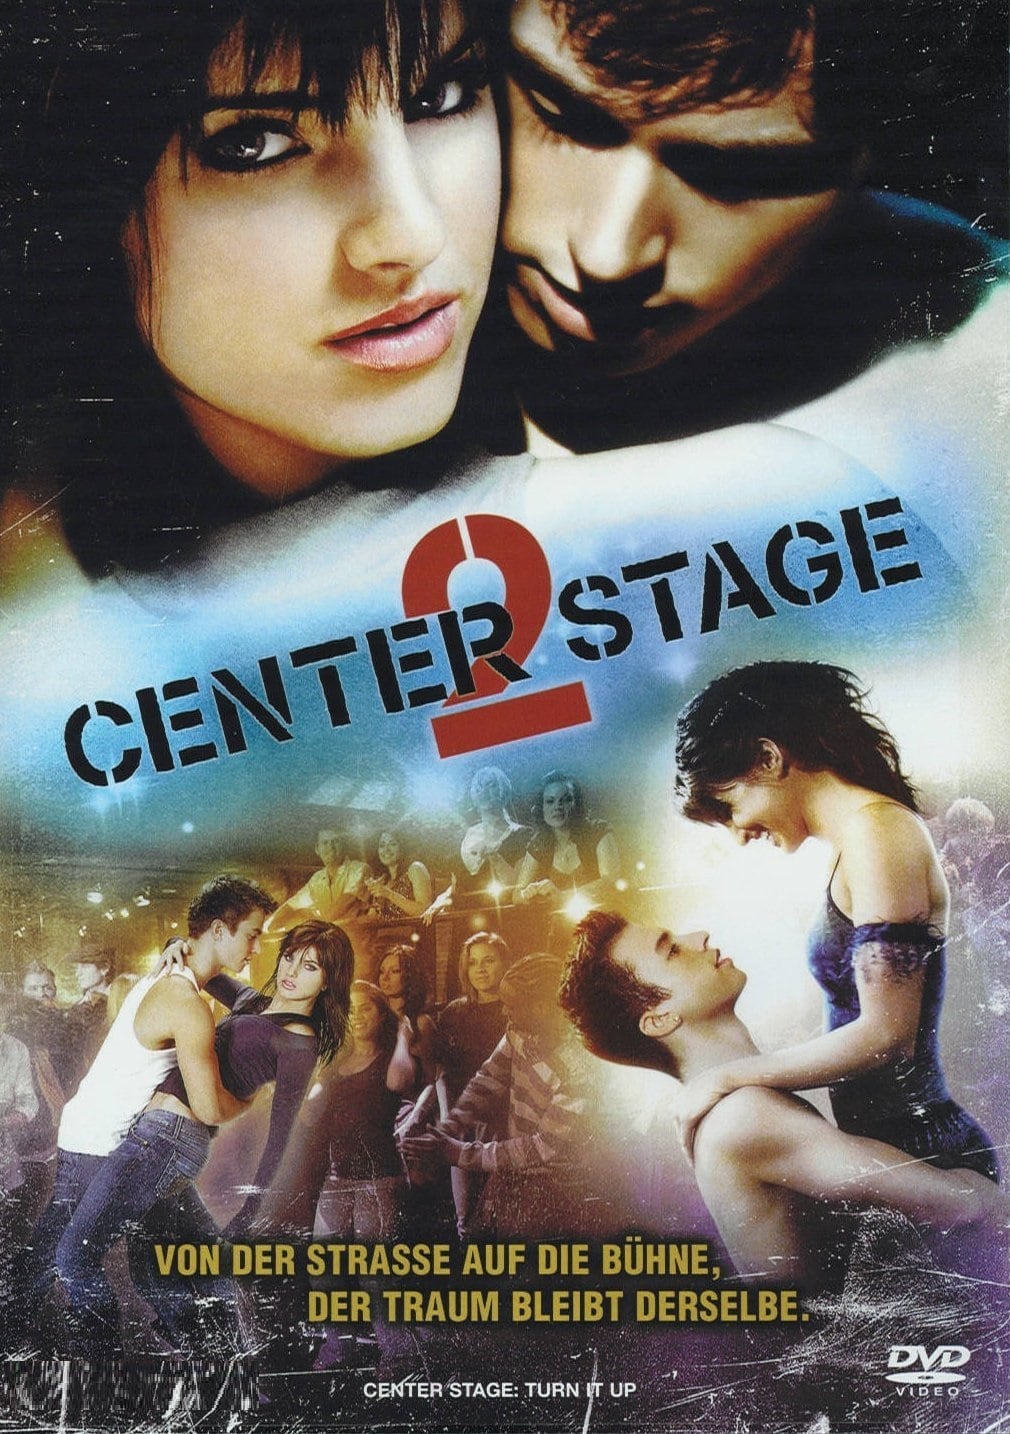 Plakat von "Center Stage 2"